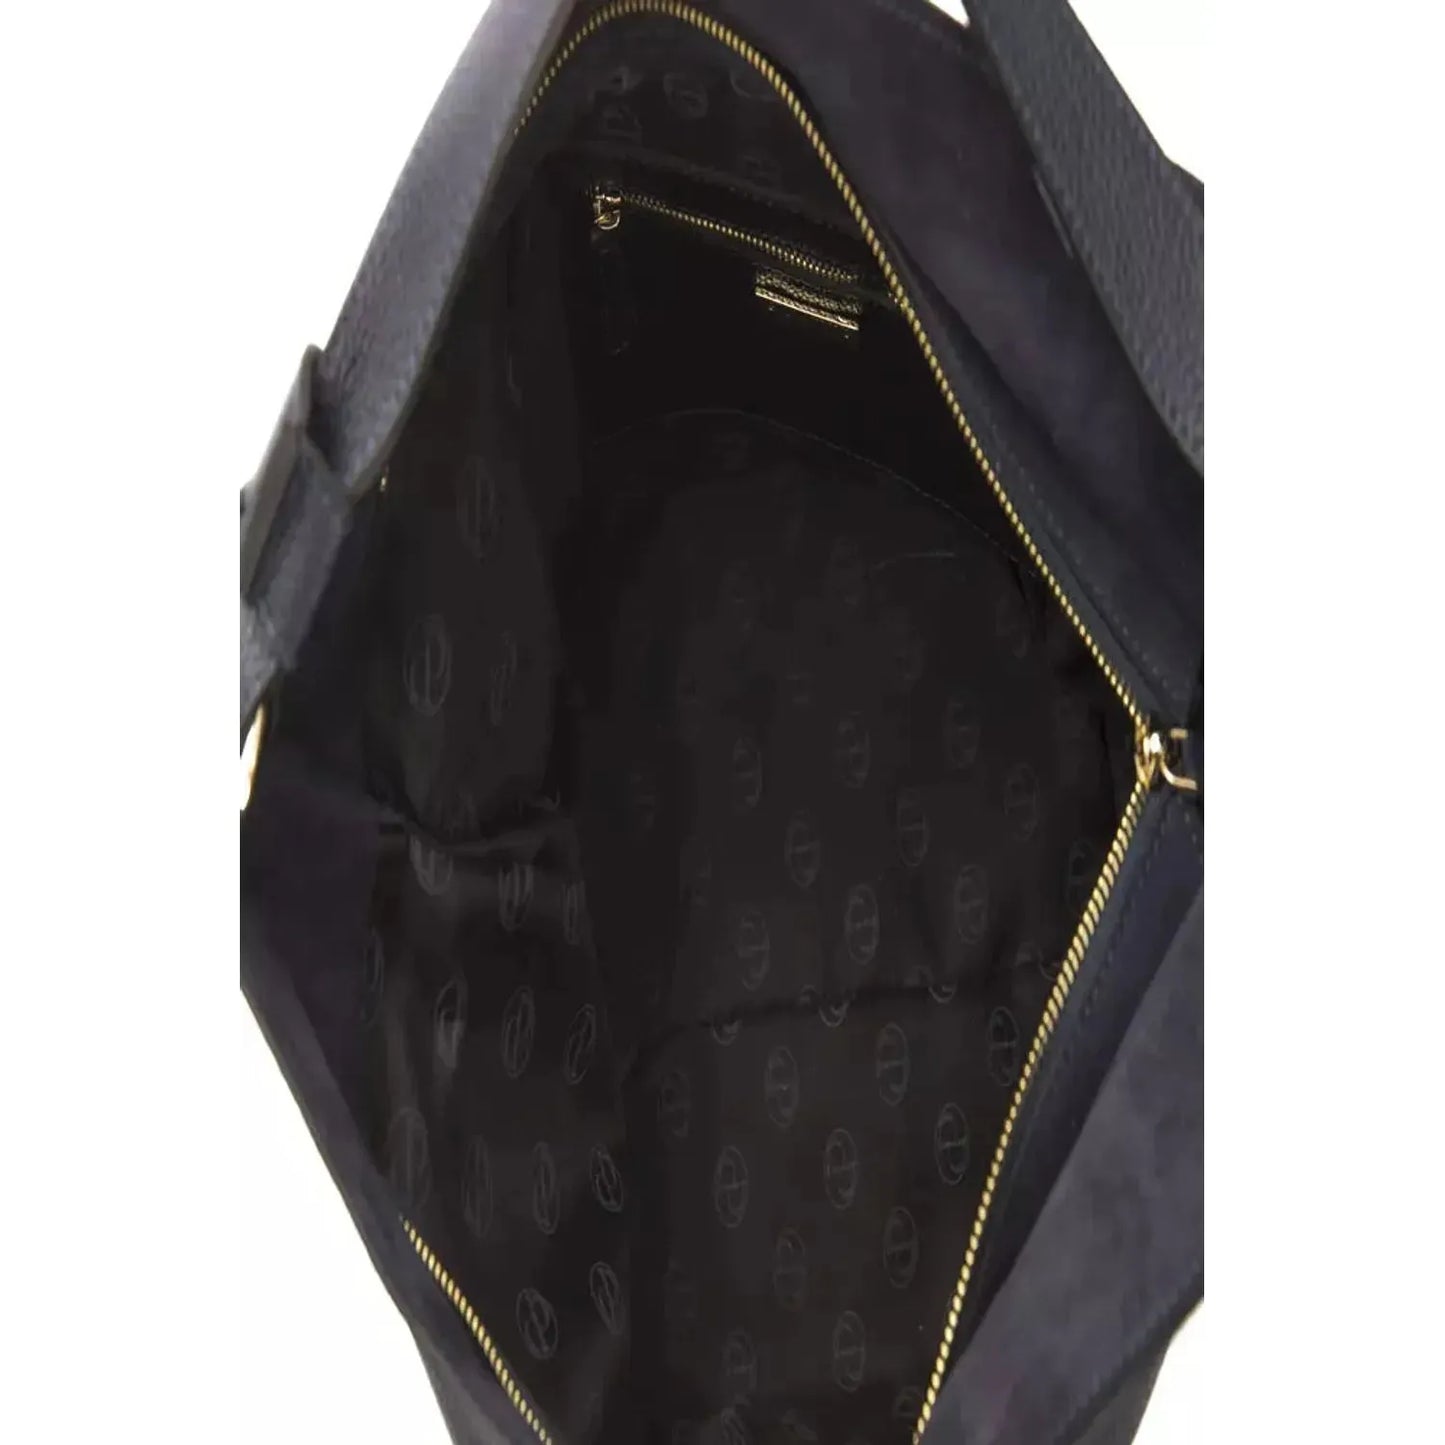 Pompei Donatella | Gray Leather Shoulder Bag | McRichard Designer Brands